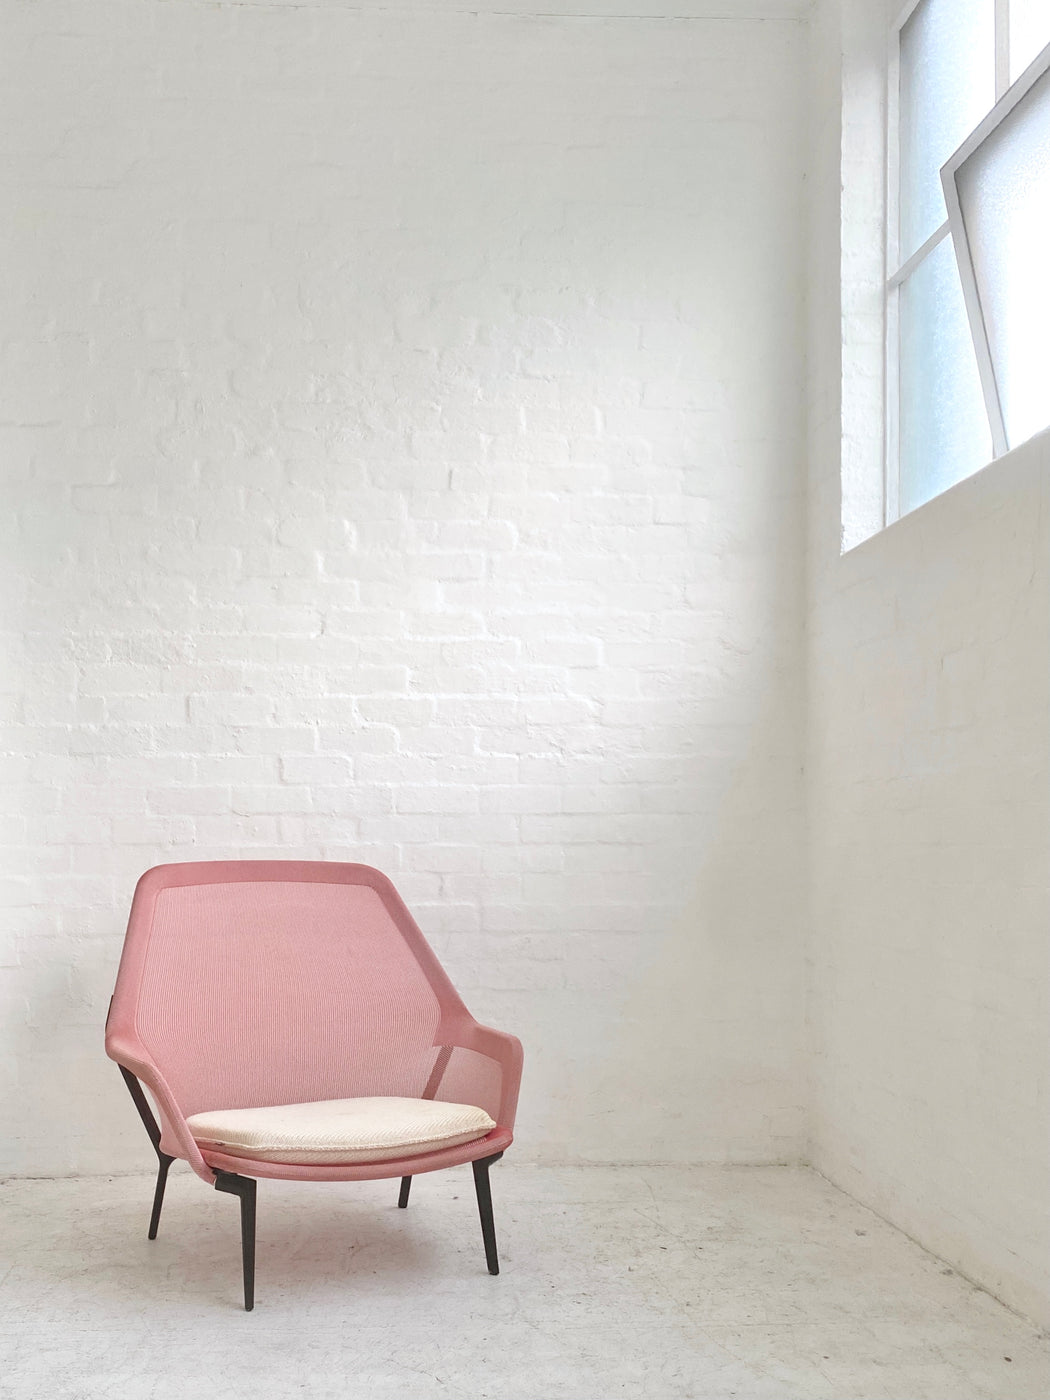 Ronan & Erwan Bouroullec 'Slow' Chair & Ottoman